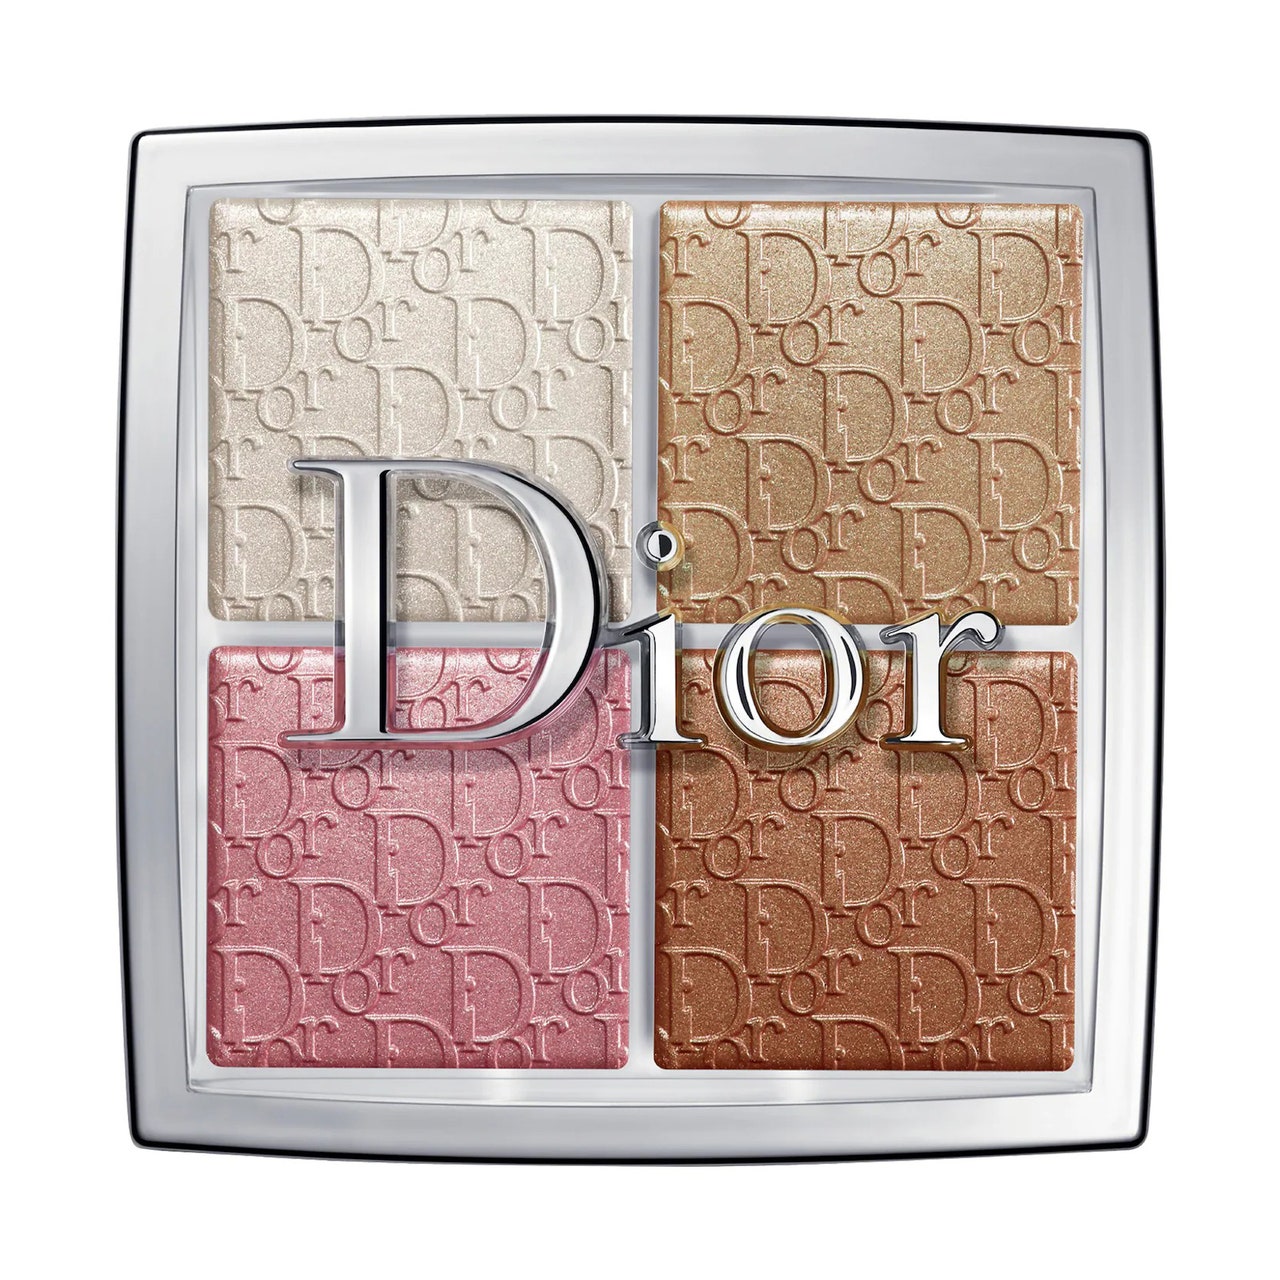 Dior Backstage Glow Face Palette Quadratische silberne Palette mit vier Highlighter-, Rouge- und Bronzer-Tönen auf weißem Hintergrund